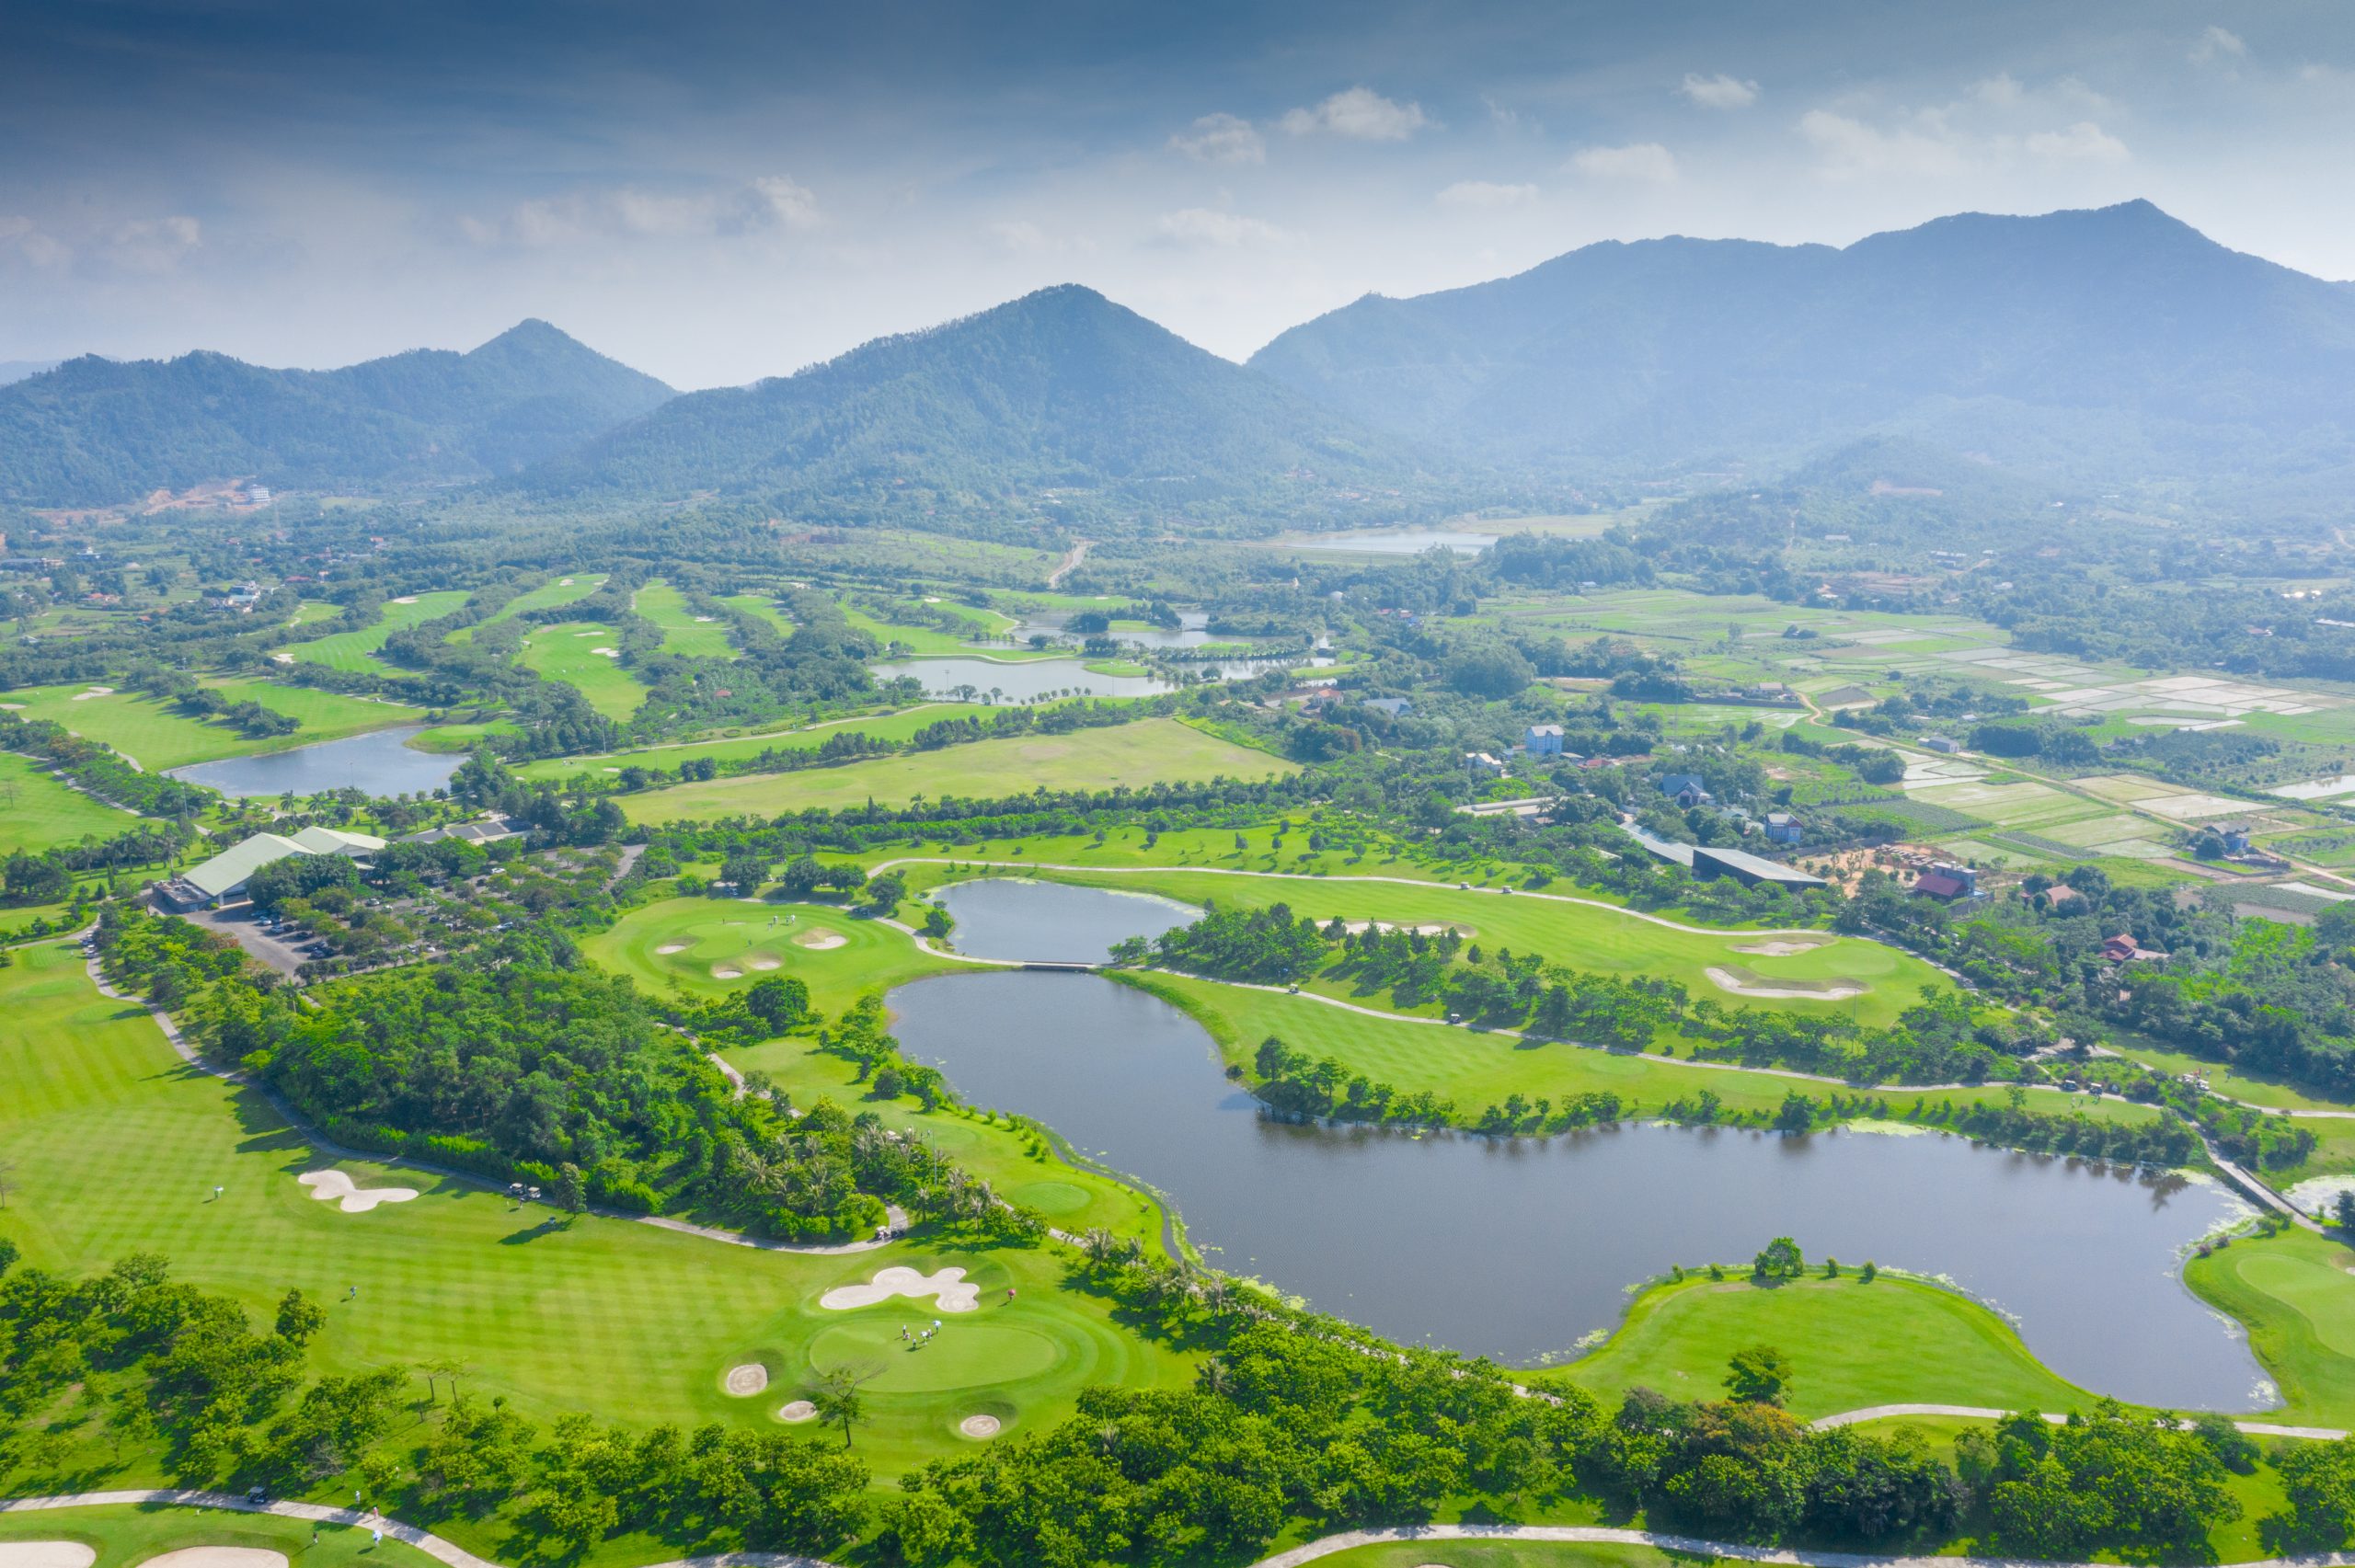 Viet Green Golf, 5 sân golf Hà Nội đẹp và chất lượng